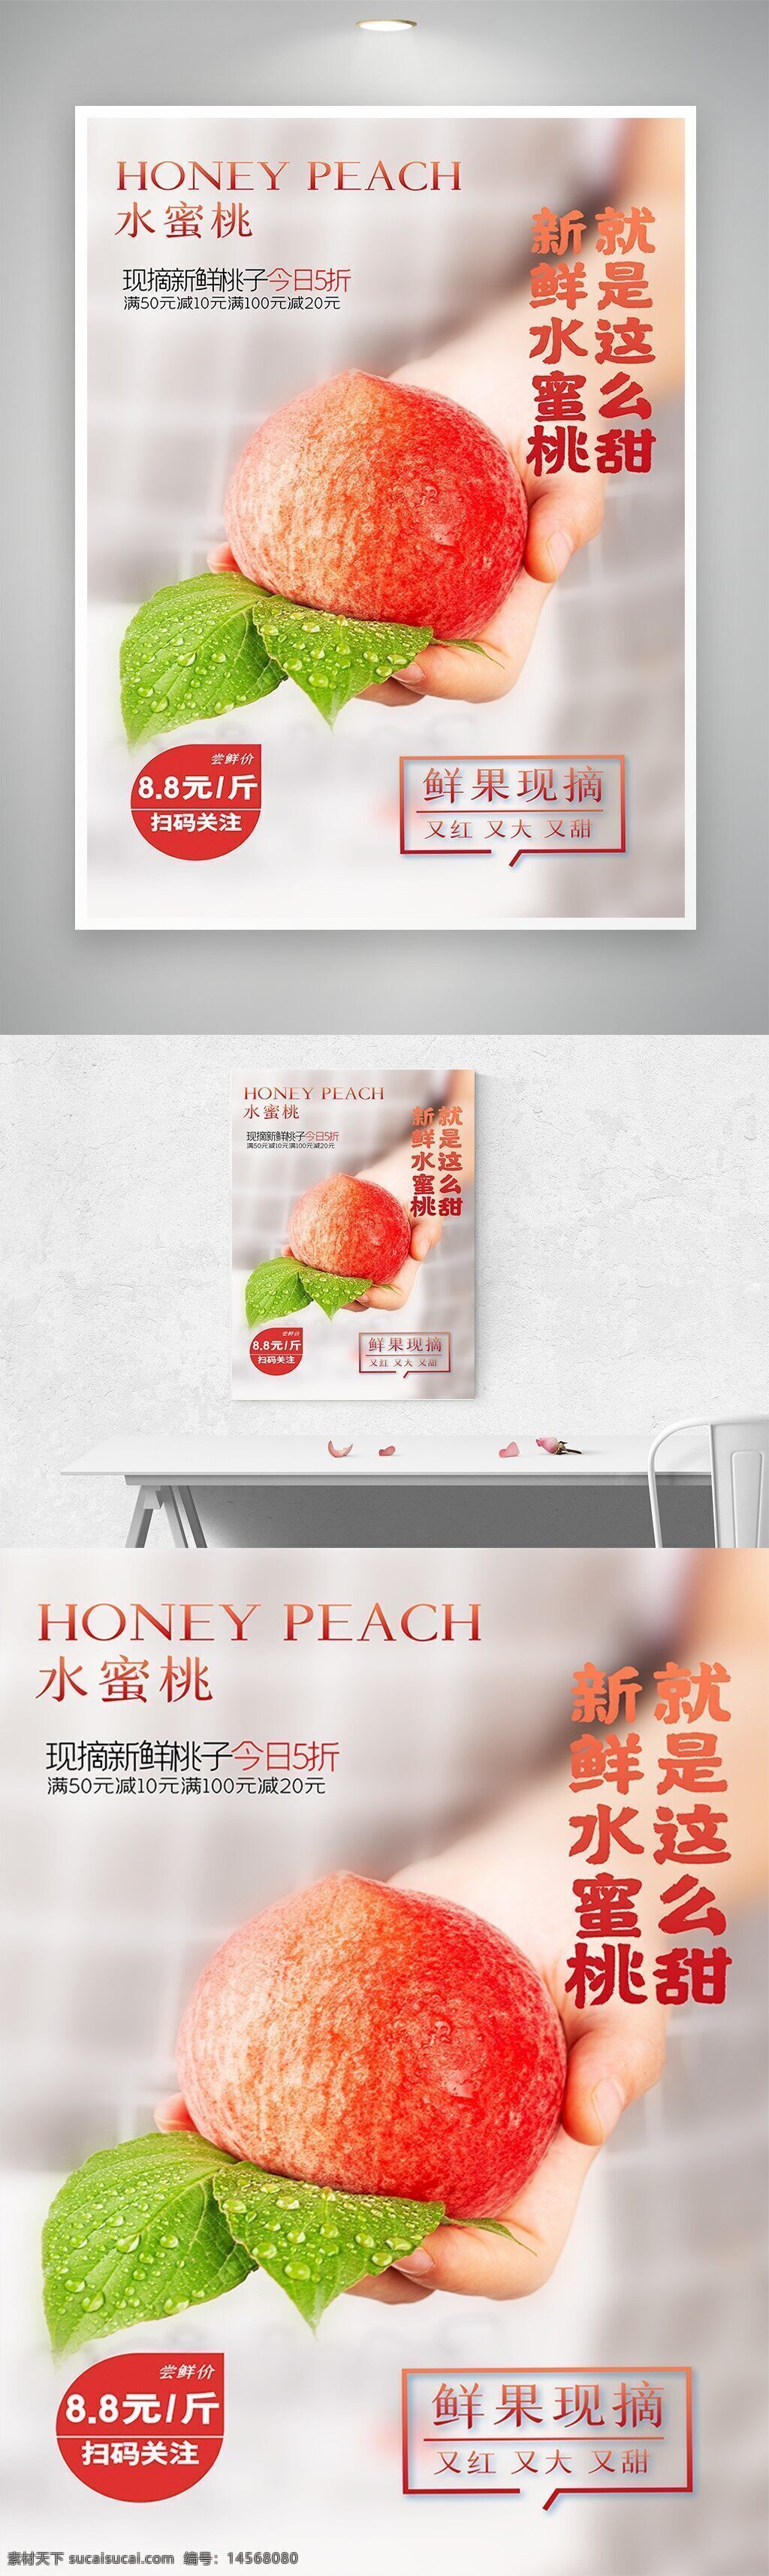 促销 节日 活动 海报 广告 平面设计 庆典 背景 中国风 美食